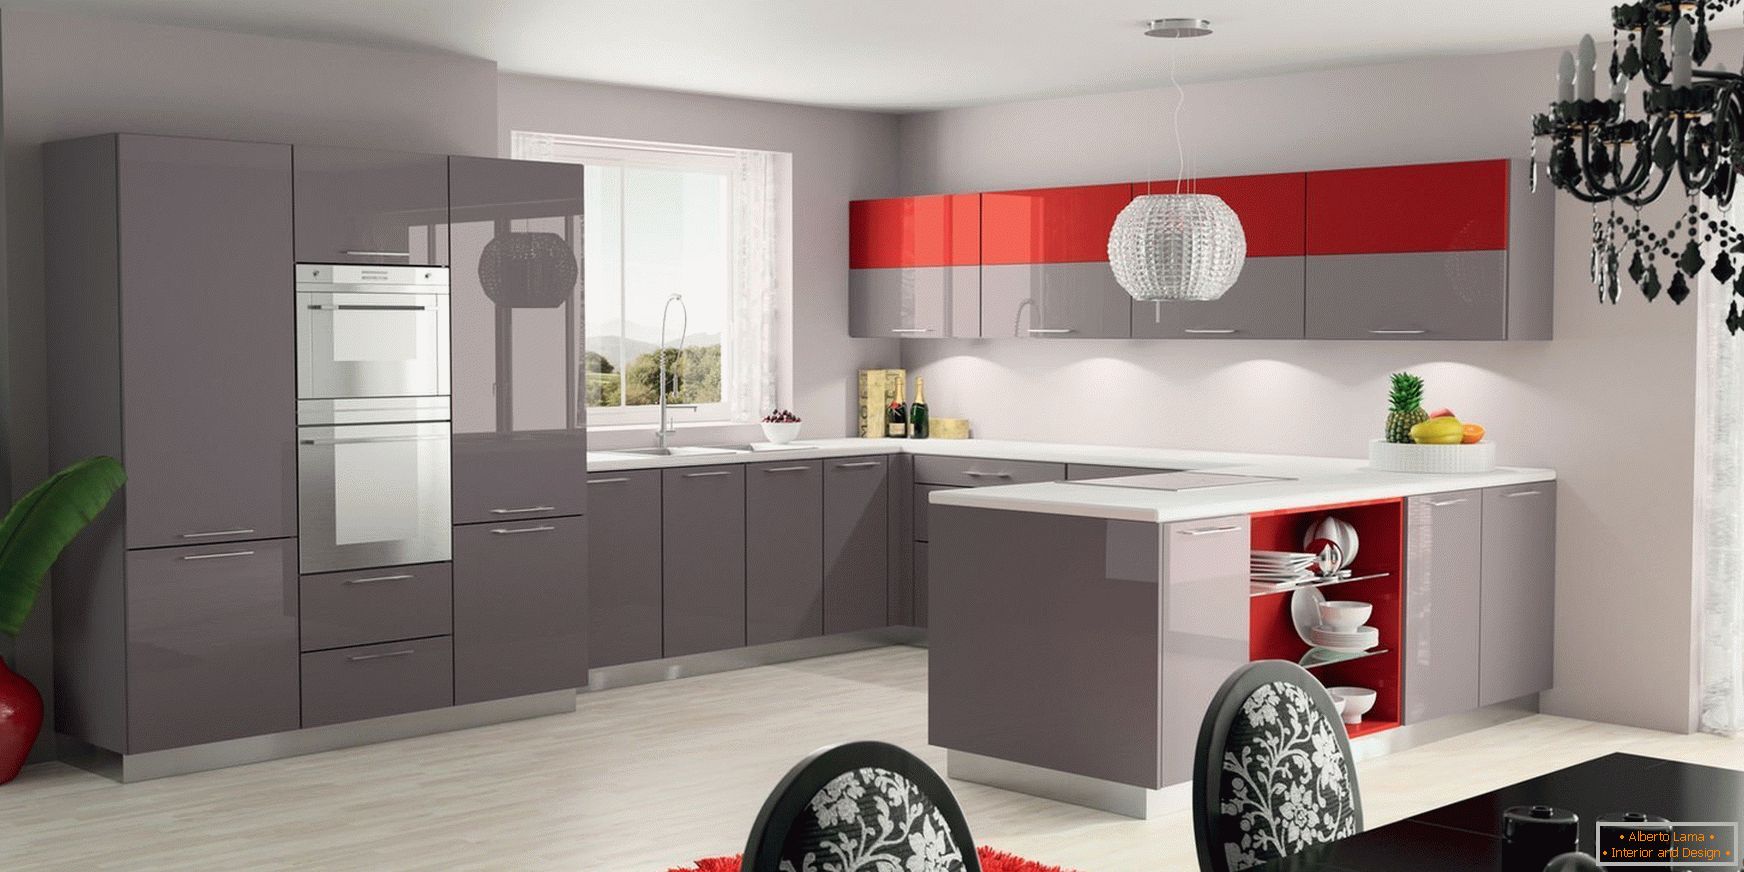 Grau-rote Küche